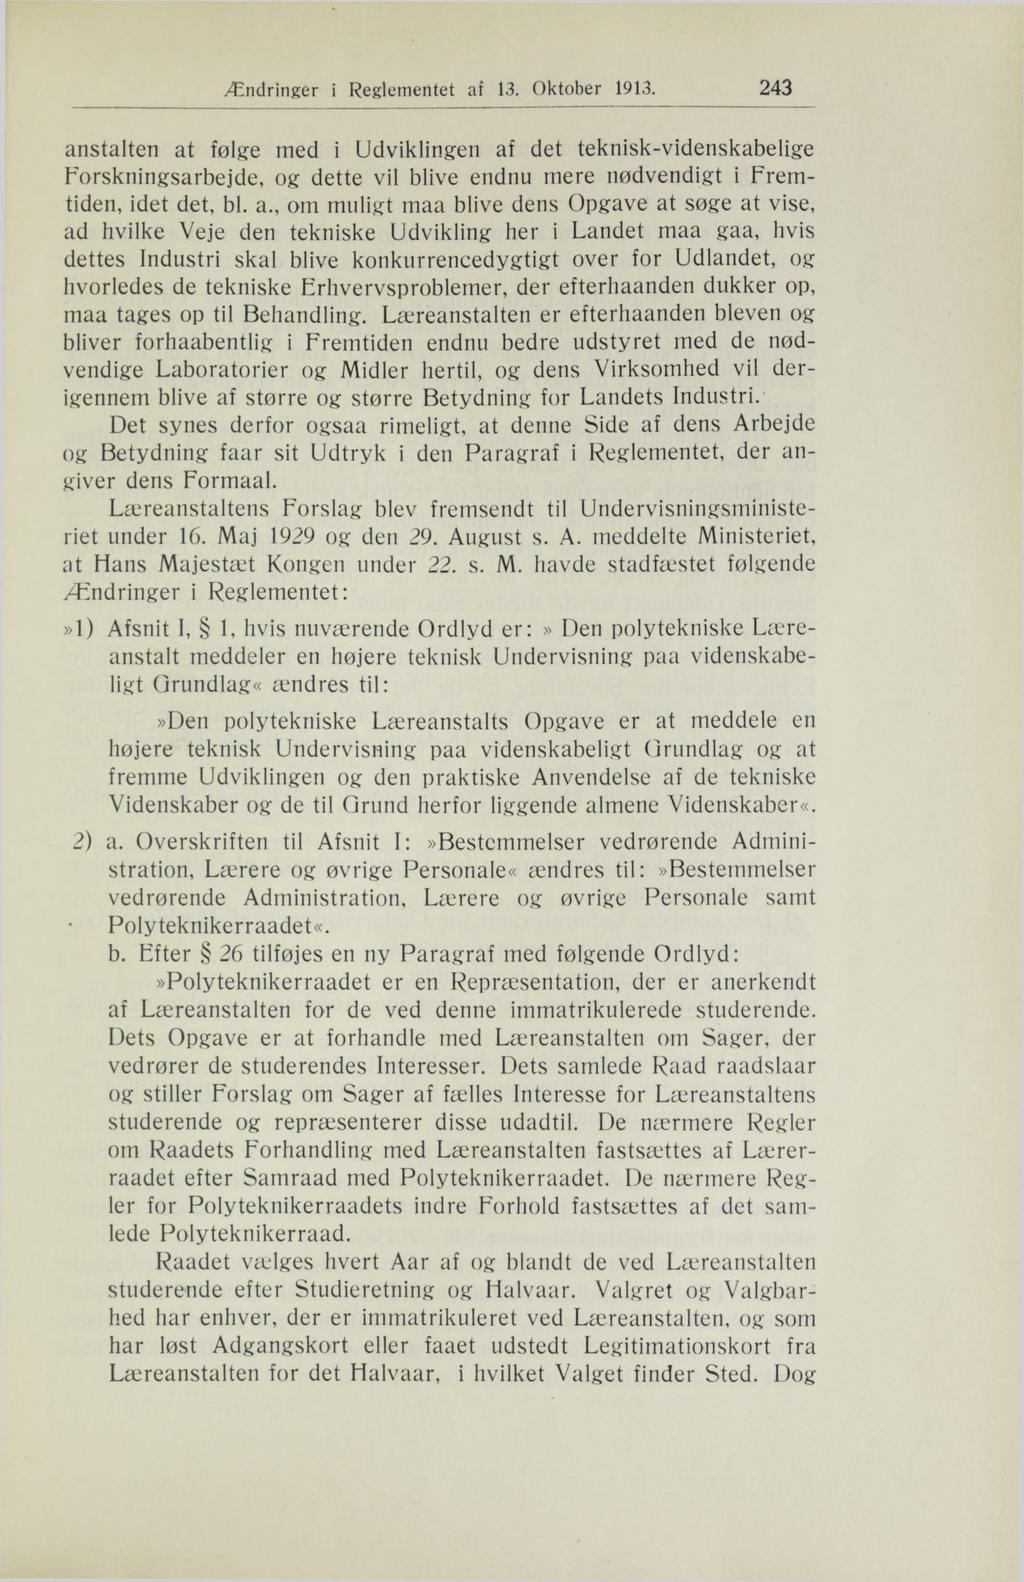 Ændringer i Reglementet af 13. Oktober 1913.